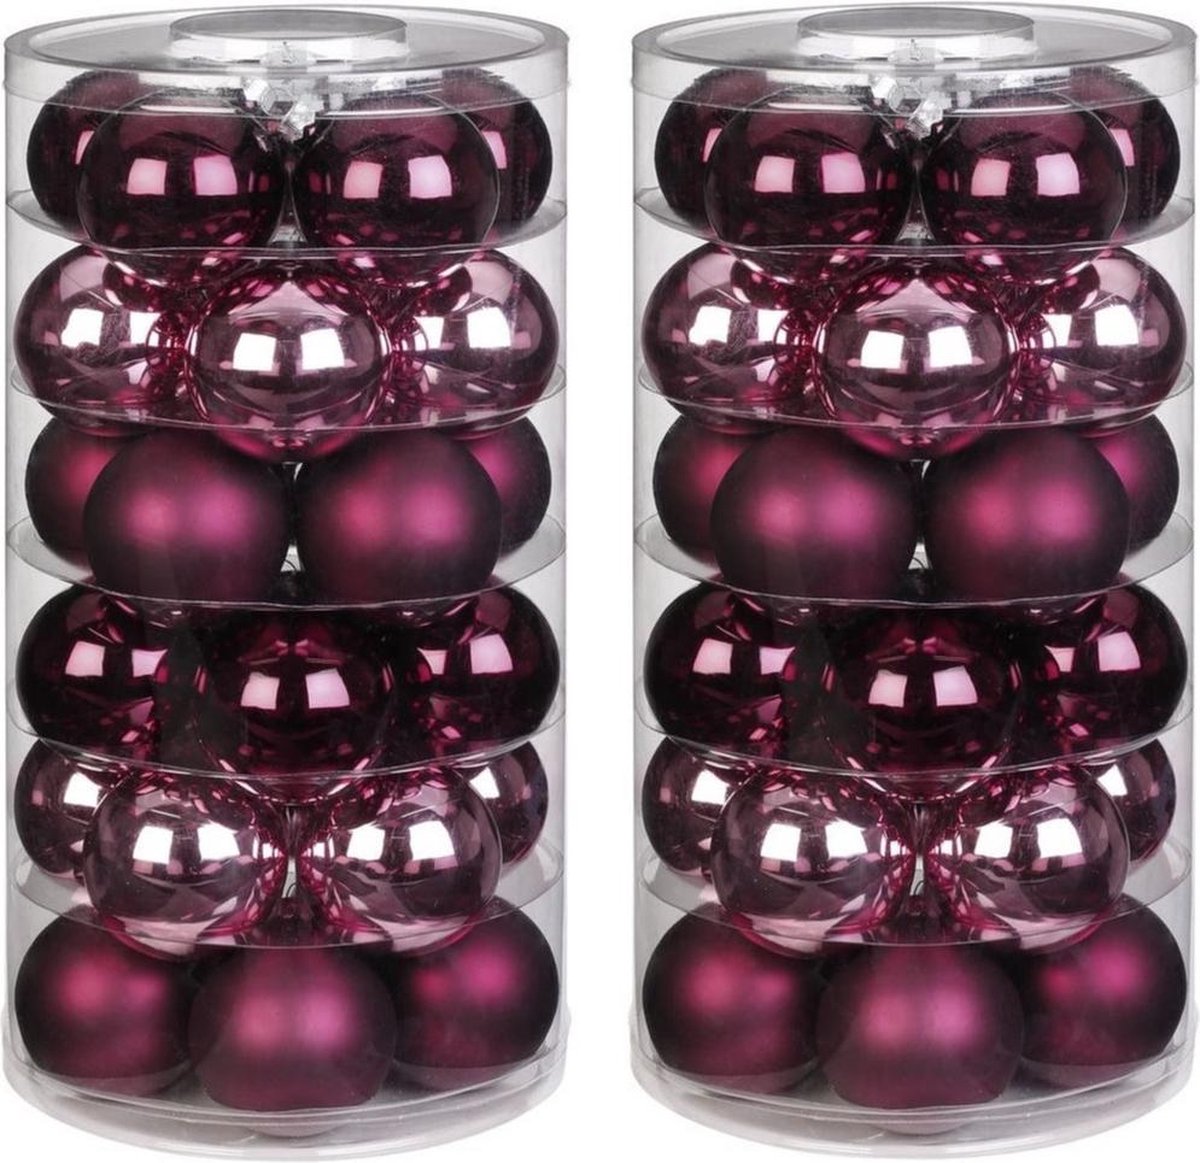 60x Berry Kiss mix glazen kerstballen 6 cm glans en mat - Kerstboomversiering mix roze/rood